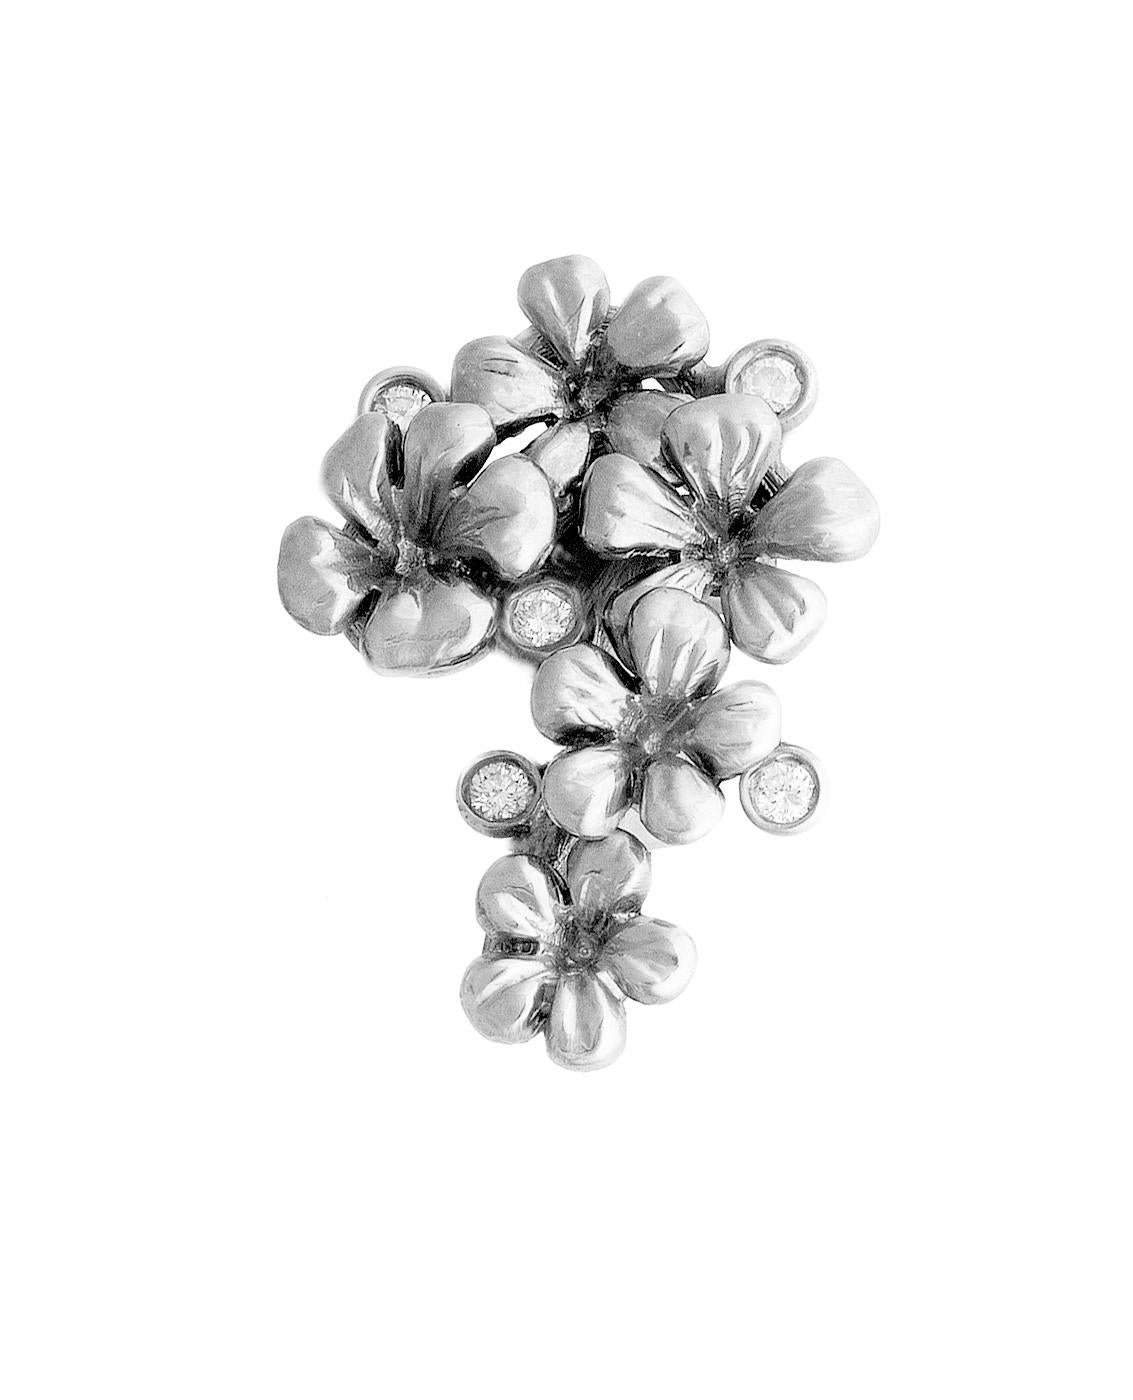 Le collier pendentif de style moderne Plum Blossom en argent sterling est orné de 5 topazes naturelles rondes. Cette collection de bijoux a été présentée dans les revues Vogue UA et Harper's Bazaar.

Le design sculptural unique ajoute des reflets